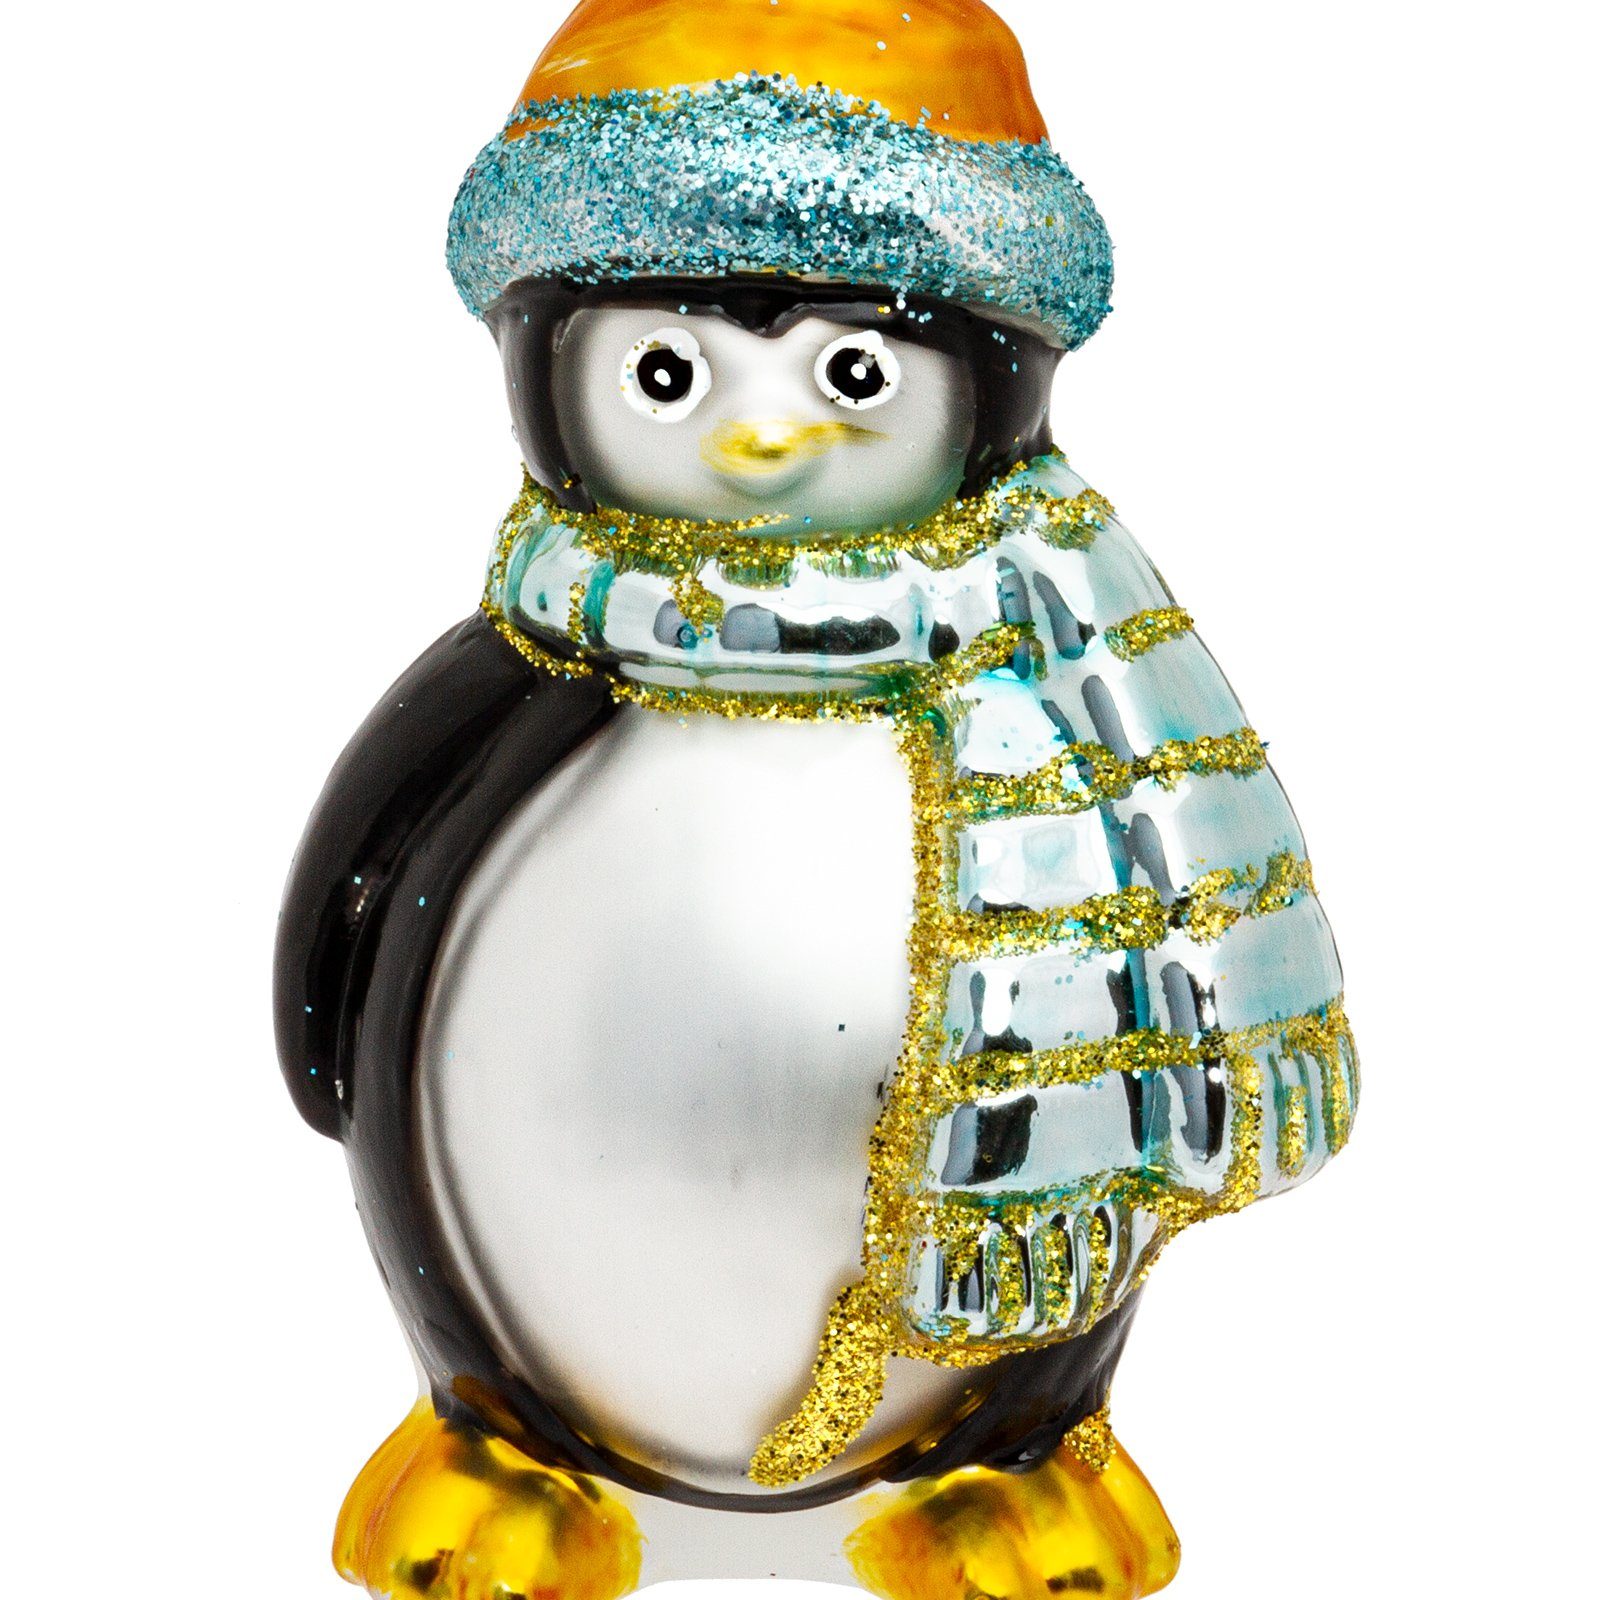 SIKORA Christbaumschmuck Pinguin BS353 Anhänger Weihnachtsbaum Figur Glas